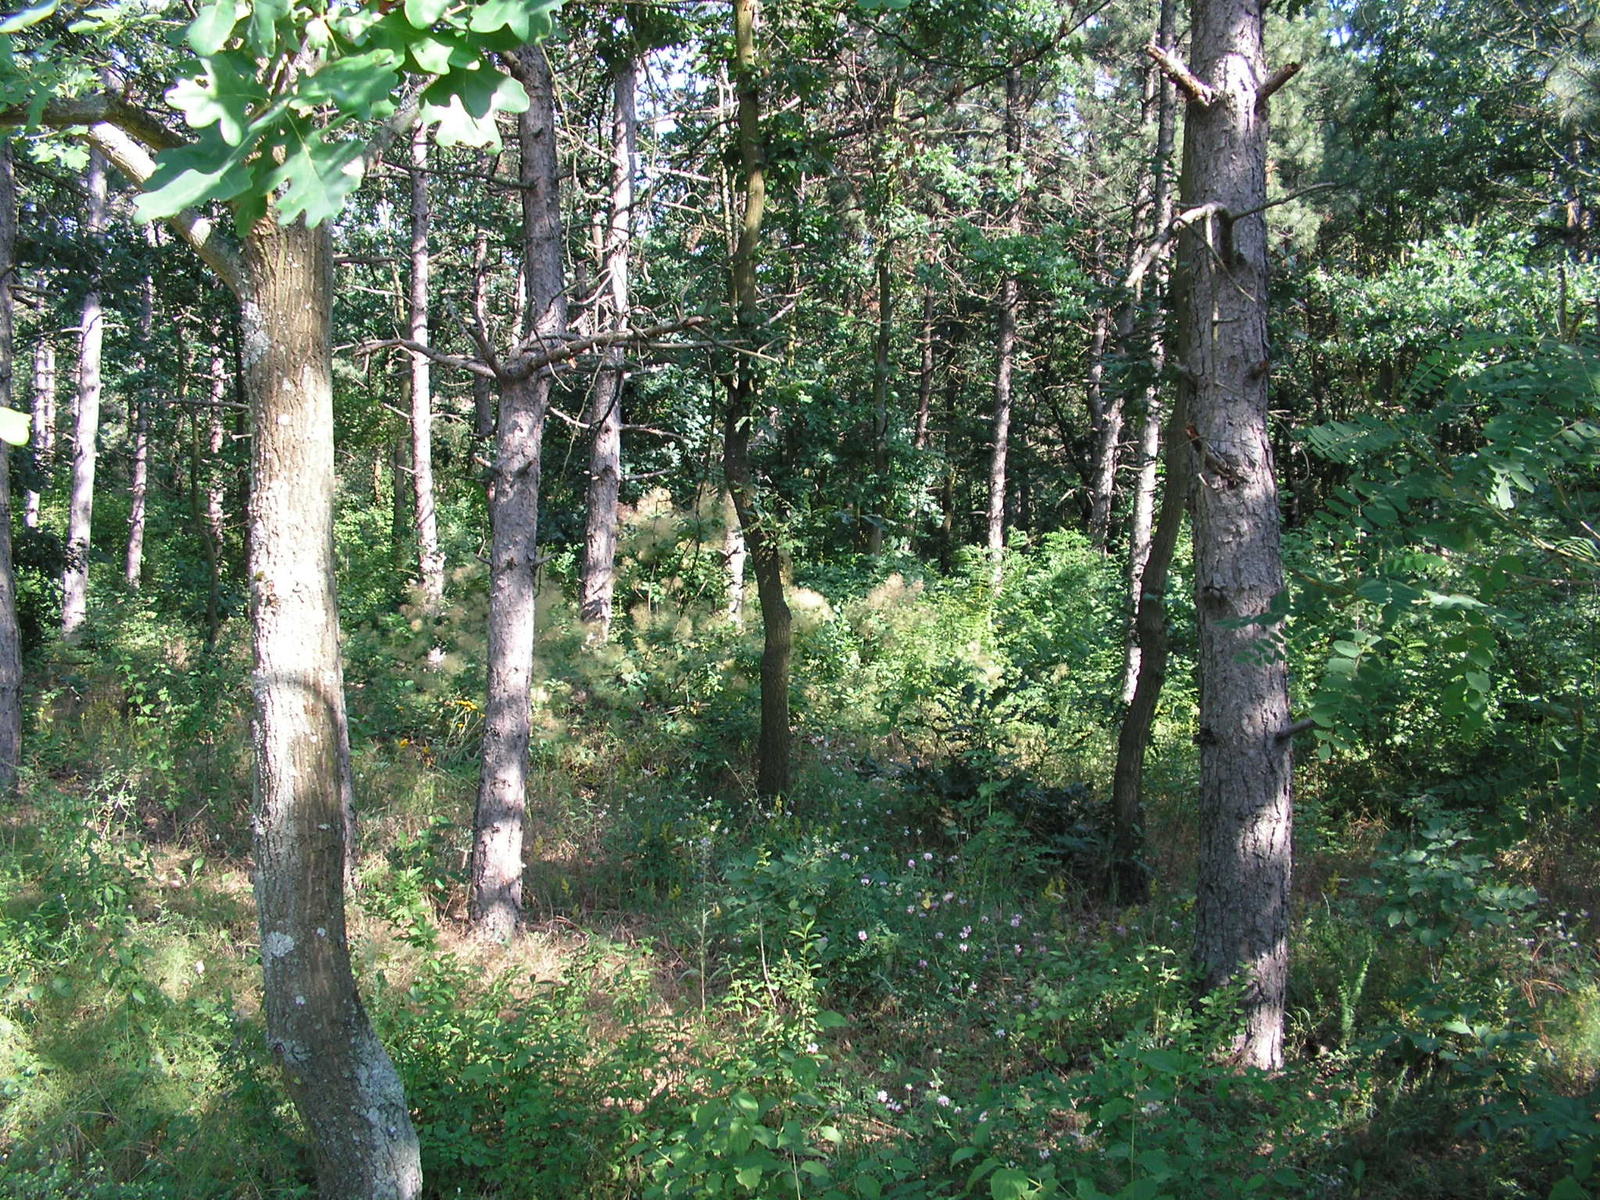 Pákozd-Sukorói Arborétum és Erdészeti Erdei Iskola, SzG3